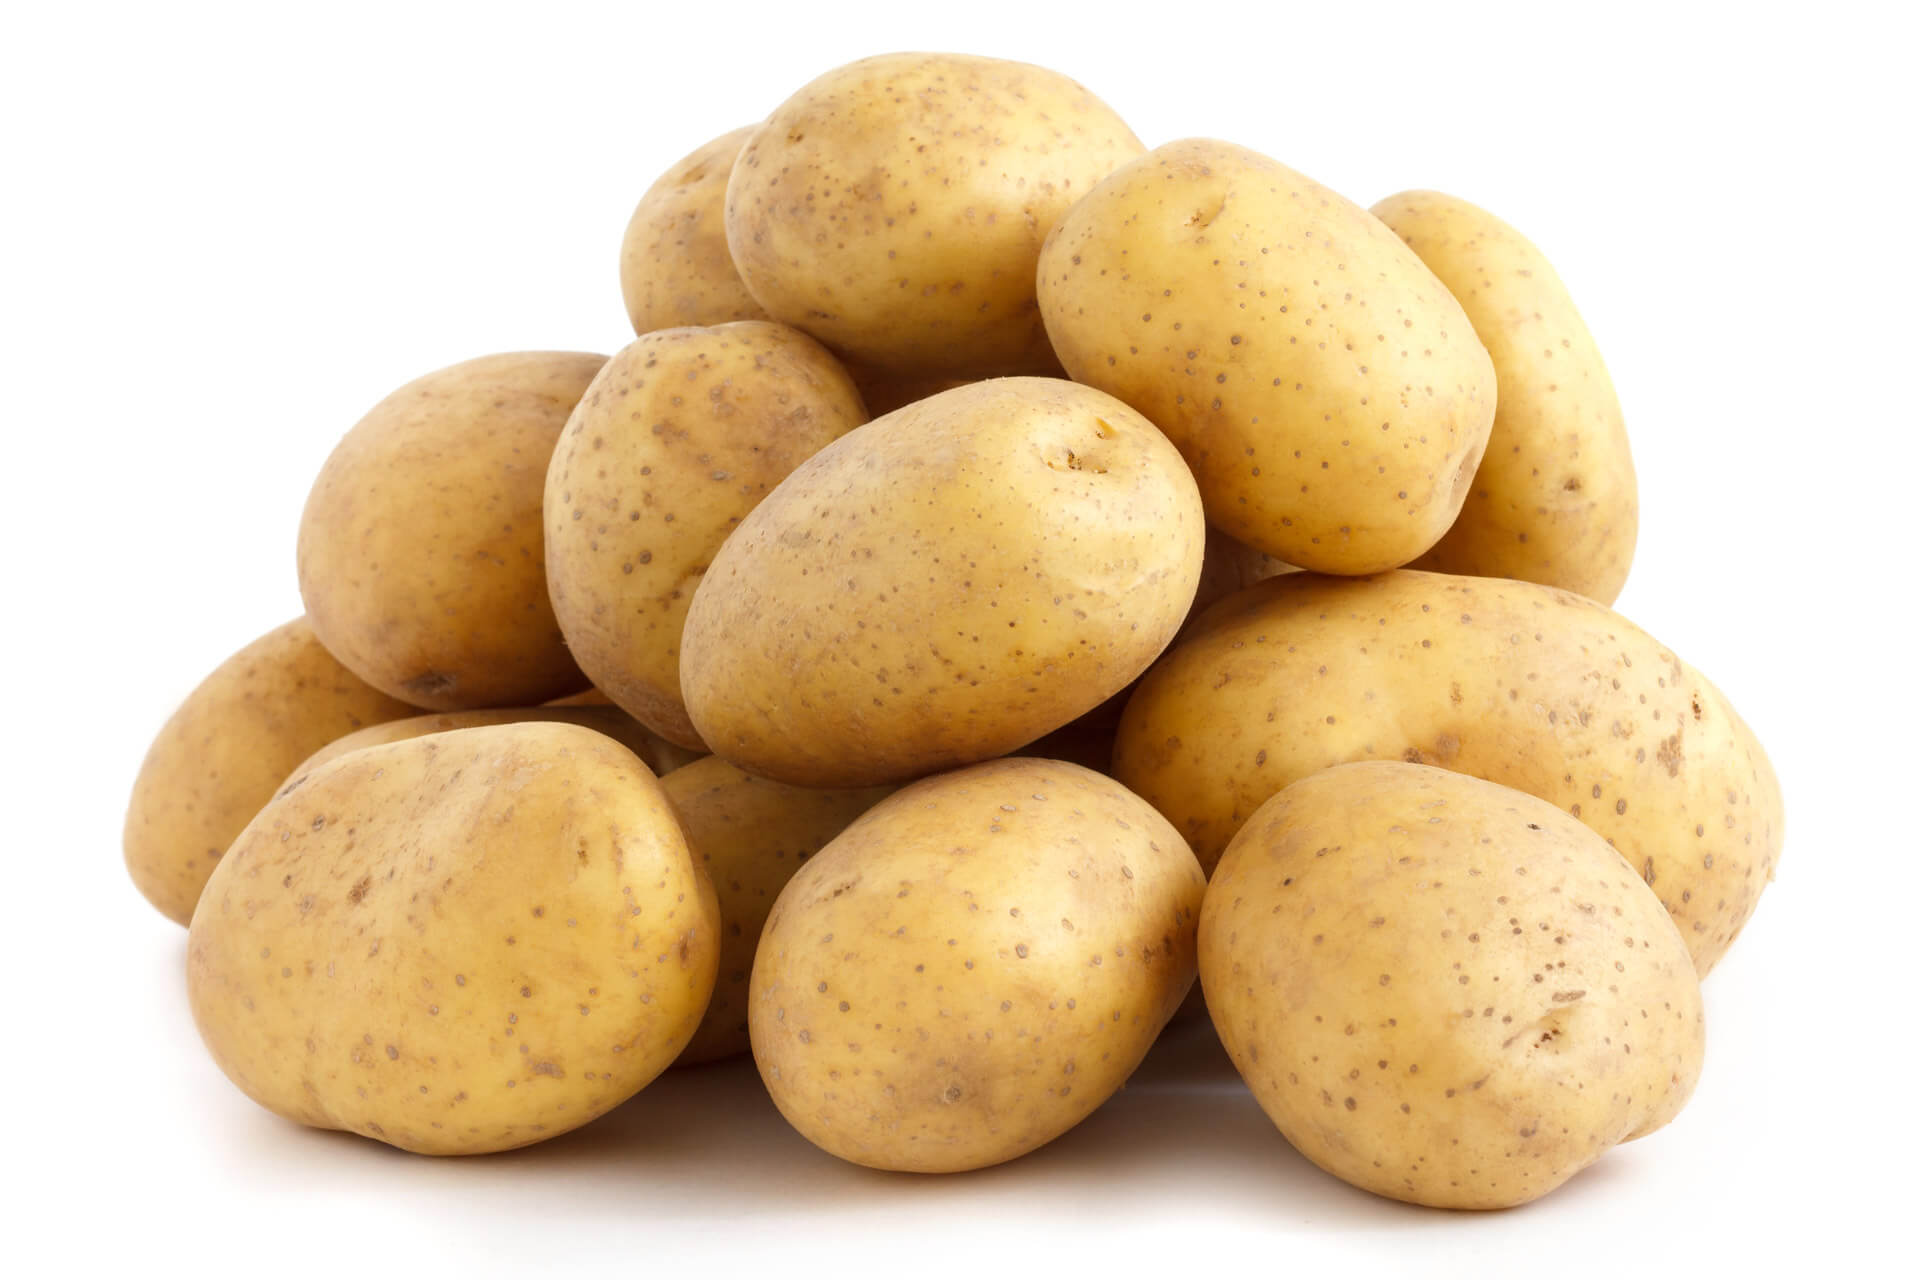 White Potato Varieties & White Potato Products California